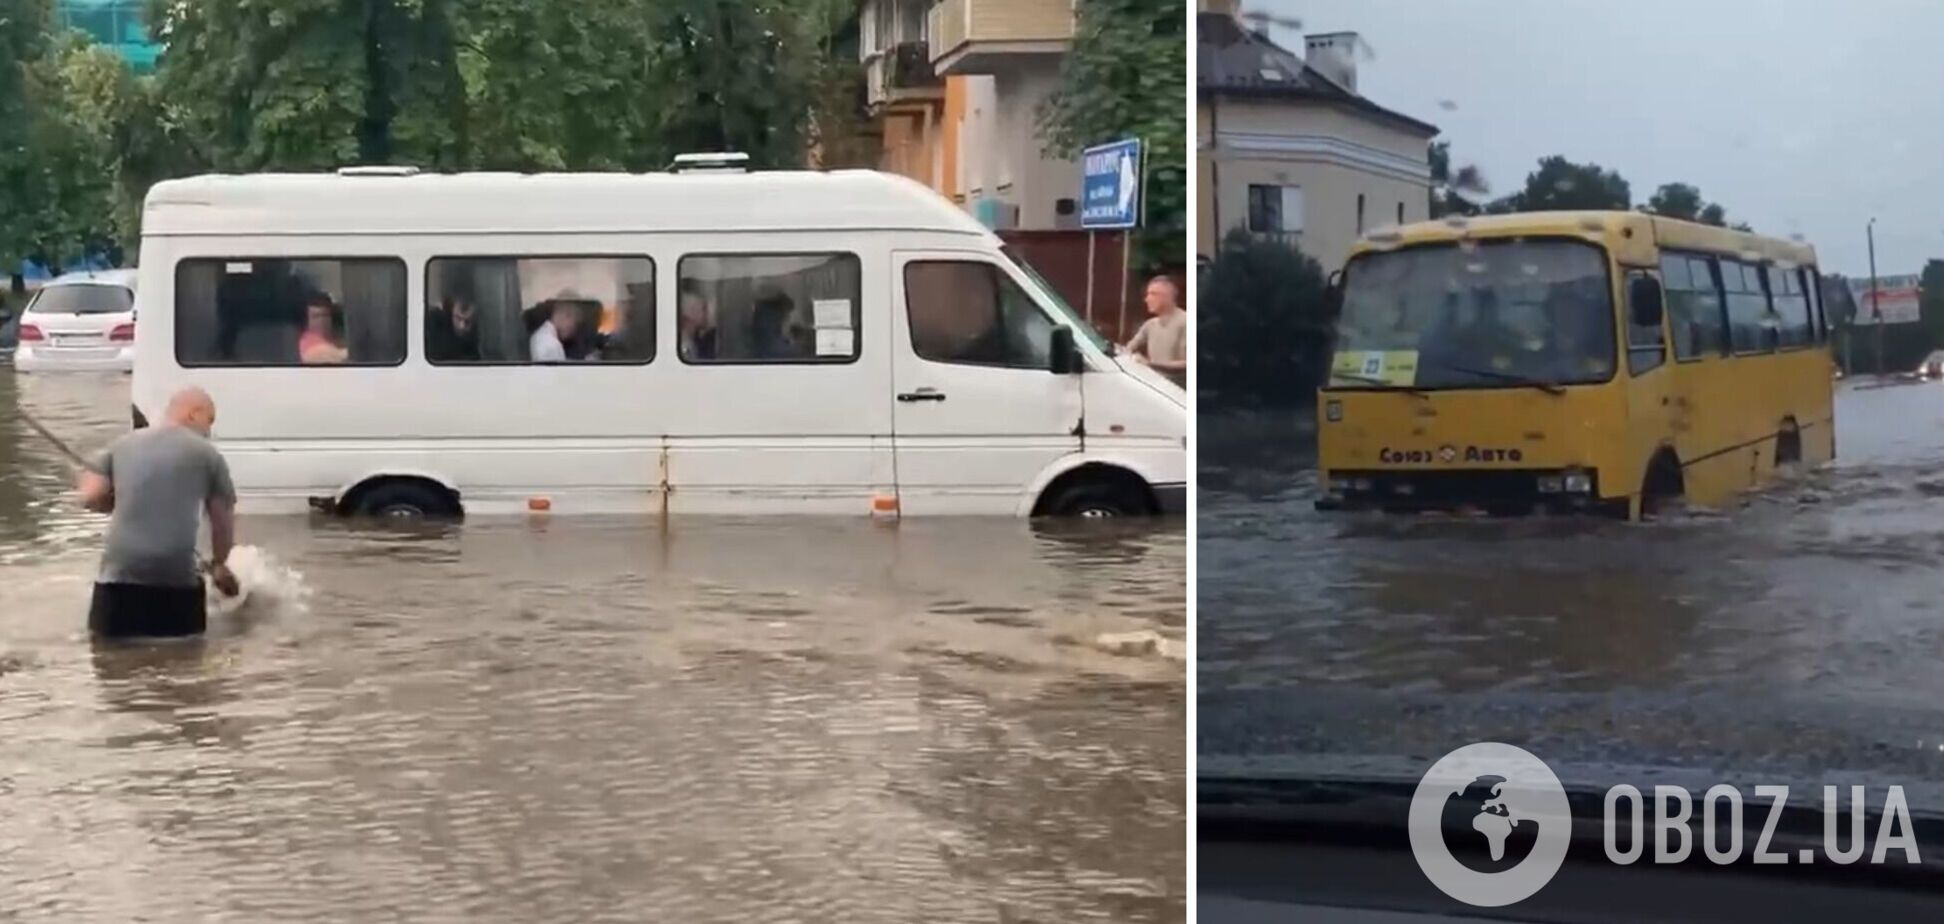 Чернигов накрыл мощный ливень с градом: улицы и авто ушли под воду. Фото и видео